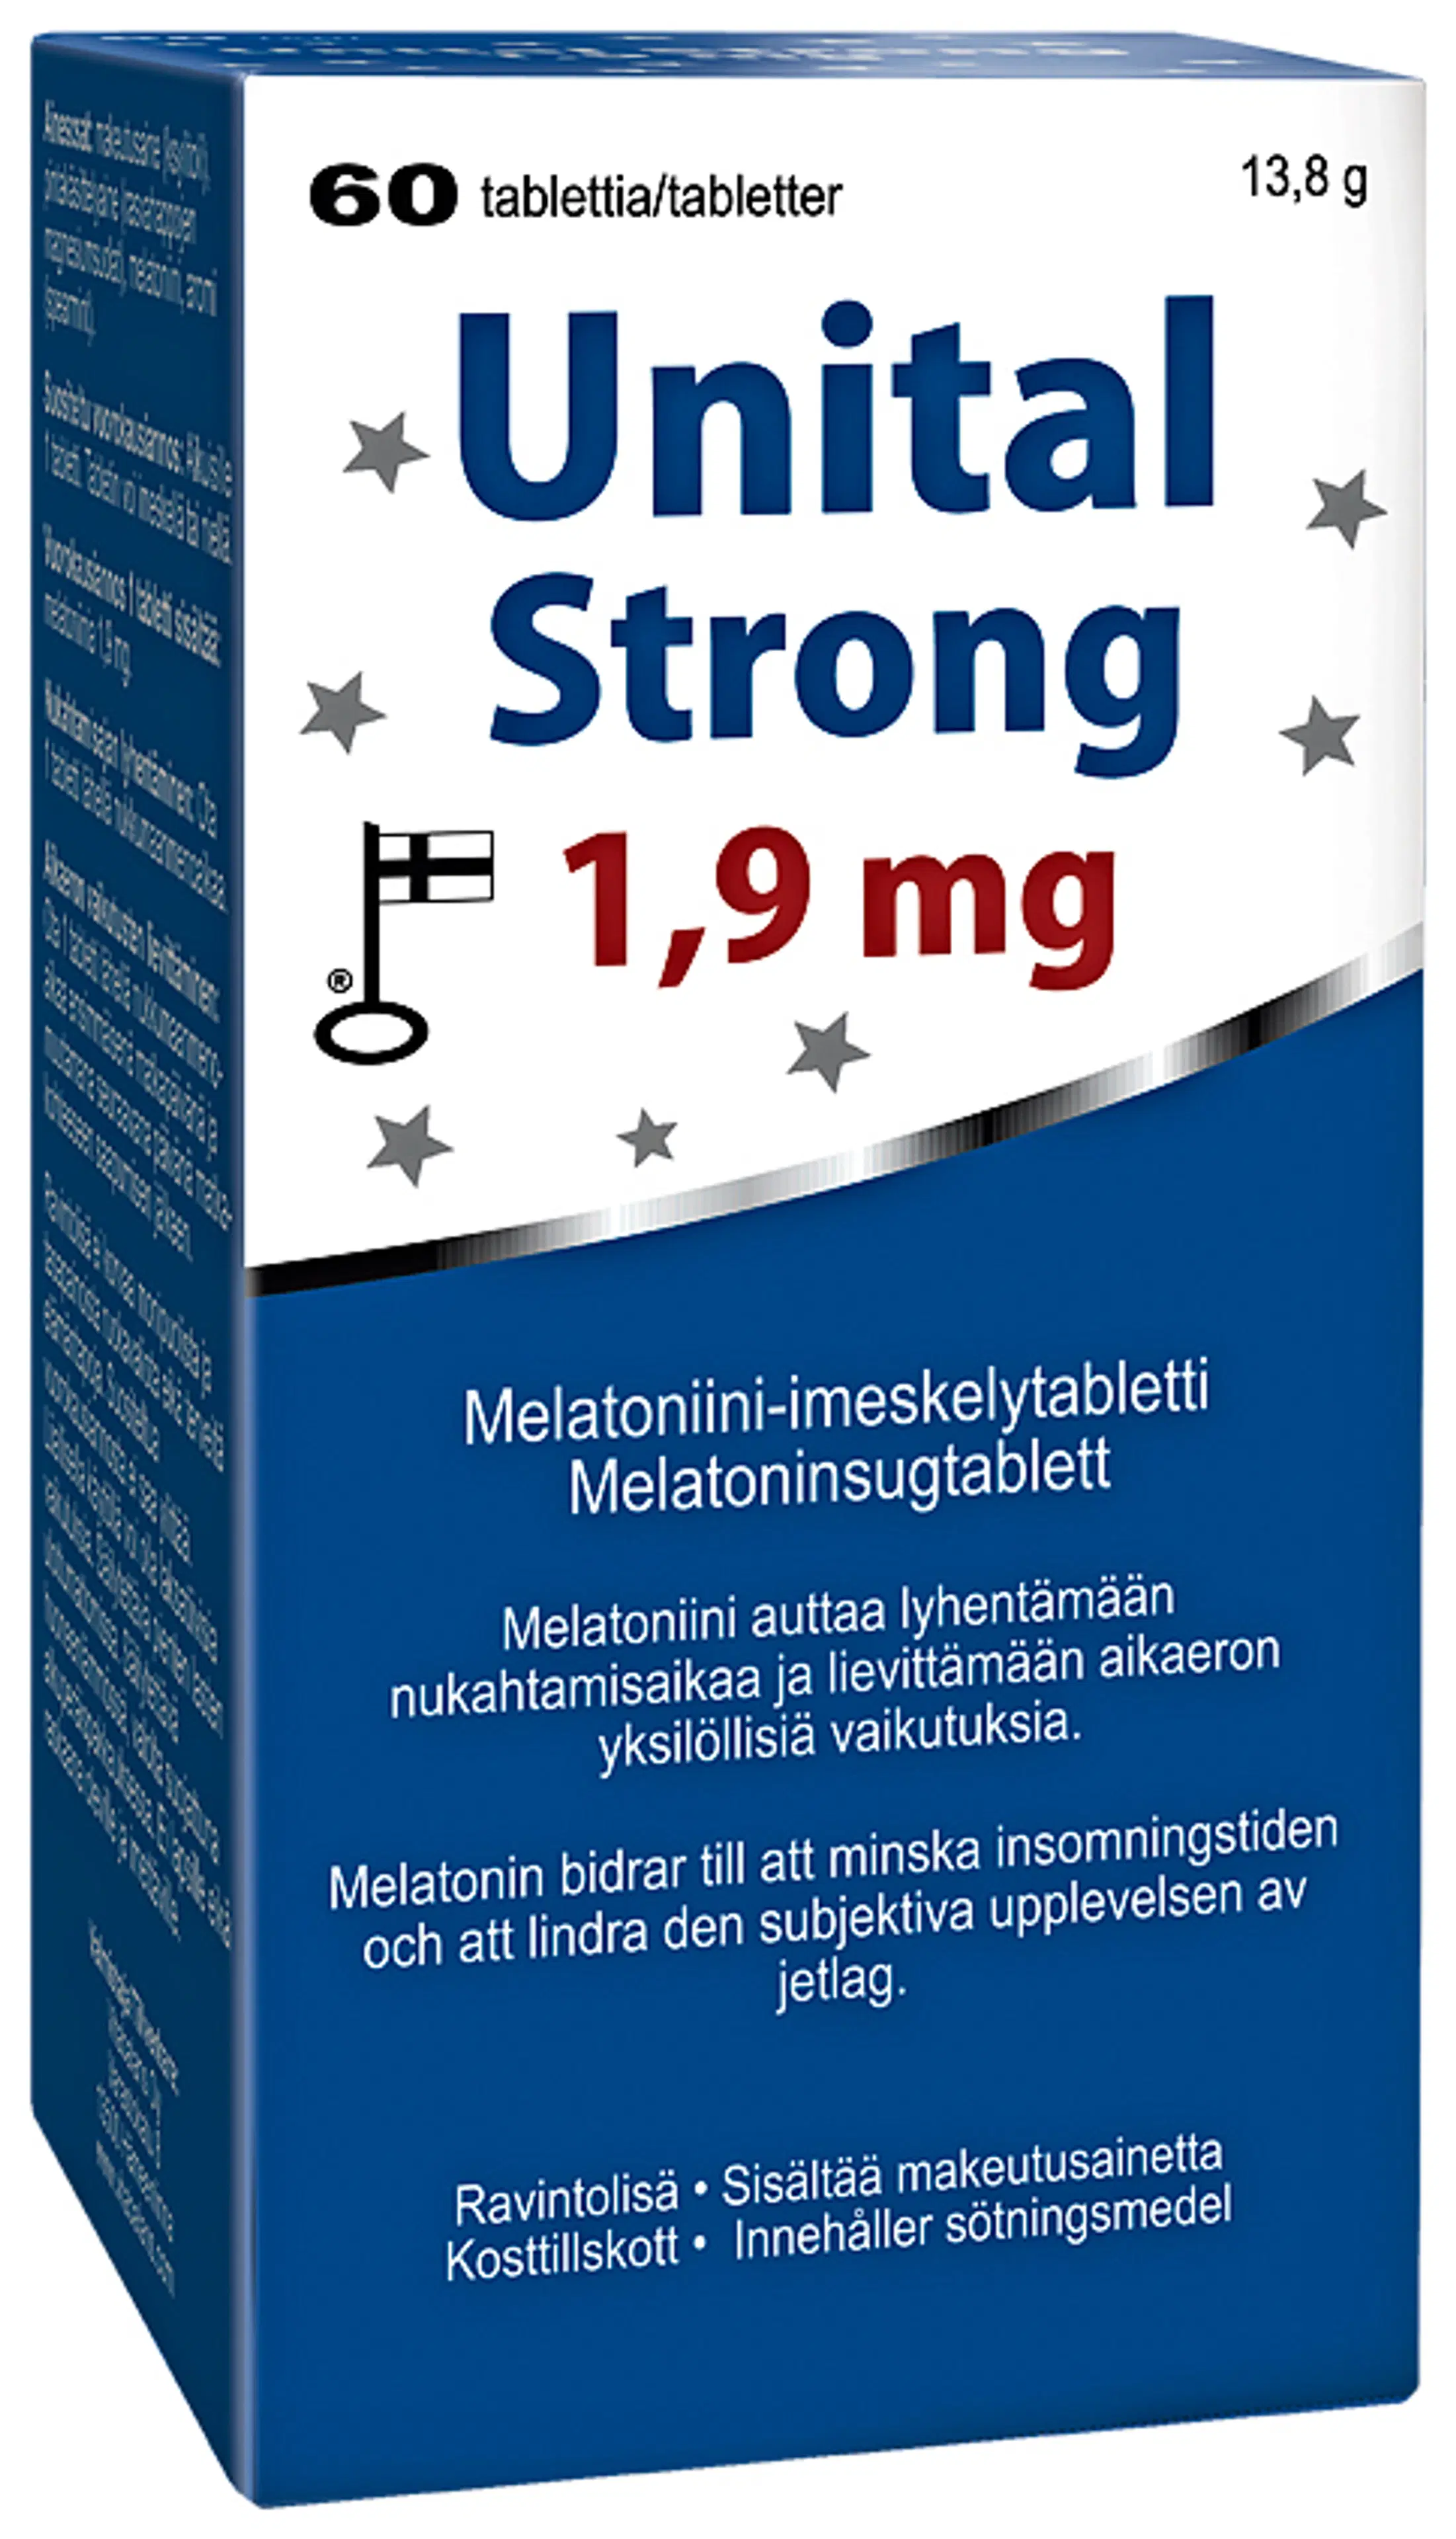 Melatoniini-imeskelytabletti Unital Strong 1,9 mg, 60 tabl. Vitabalans